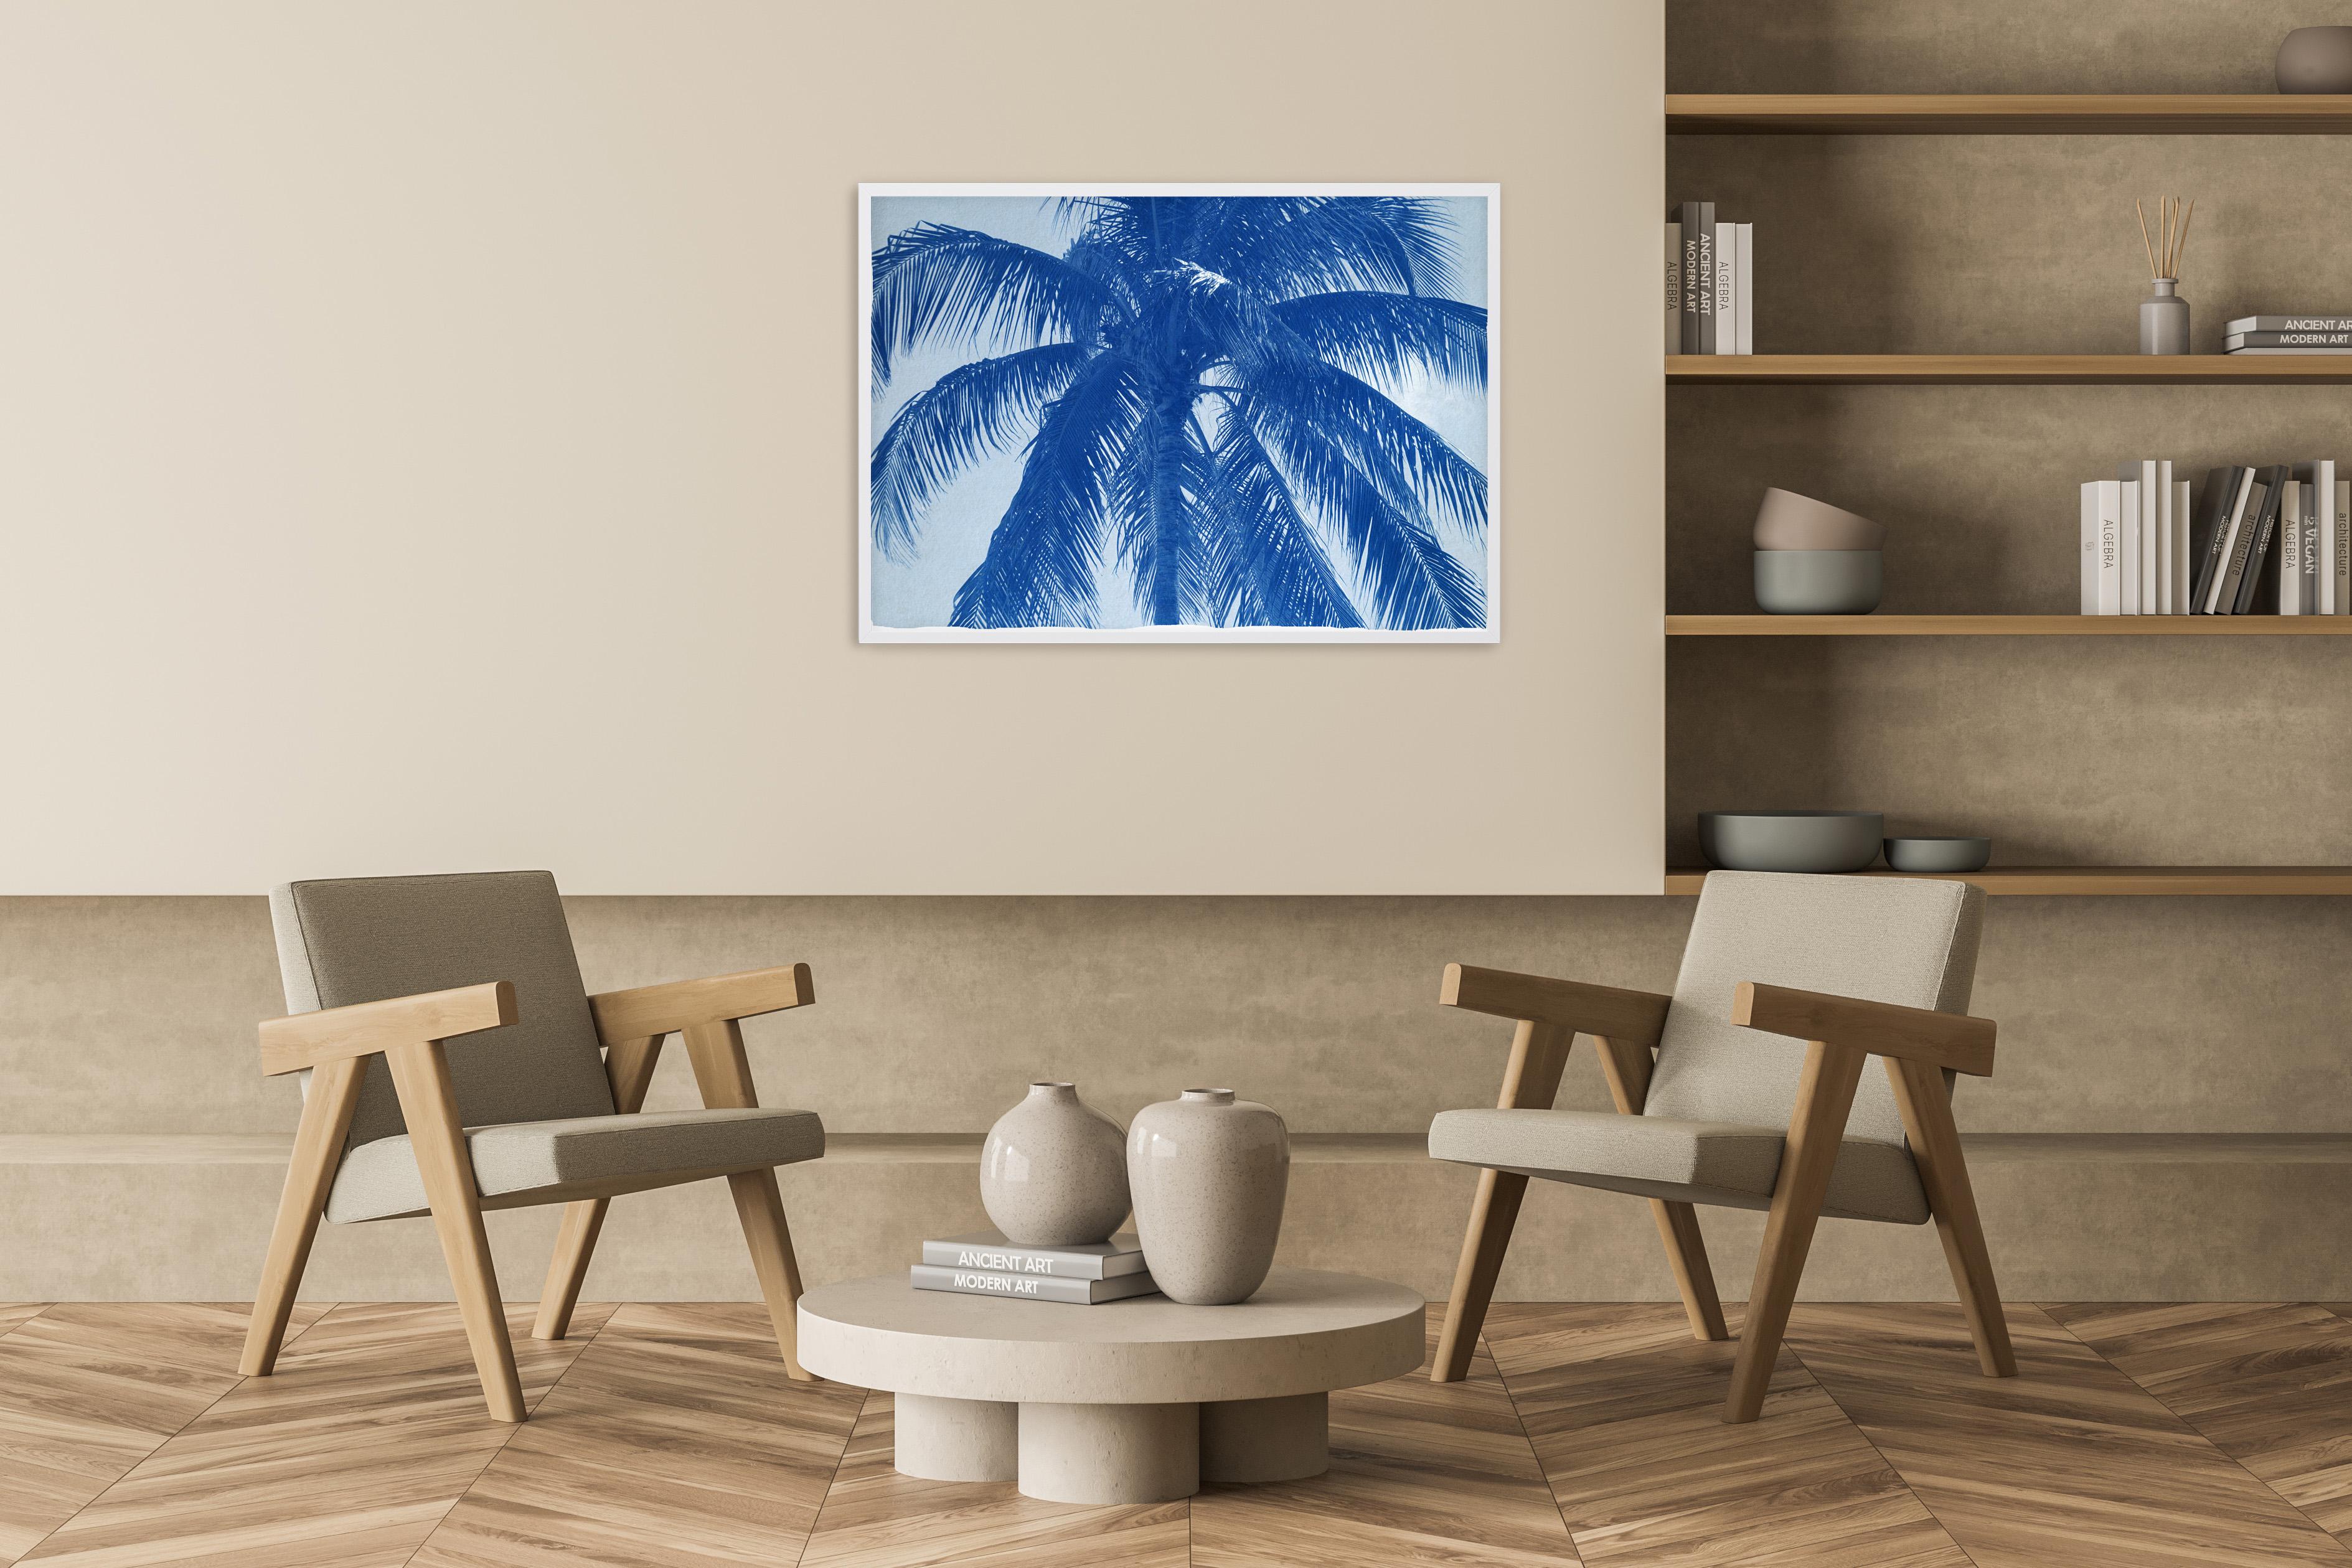 Palme de noix de coco, grande impression botanique, style tropical dans les tons bleus, limitée - Photograph de Kind of Cyan